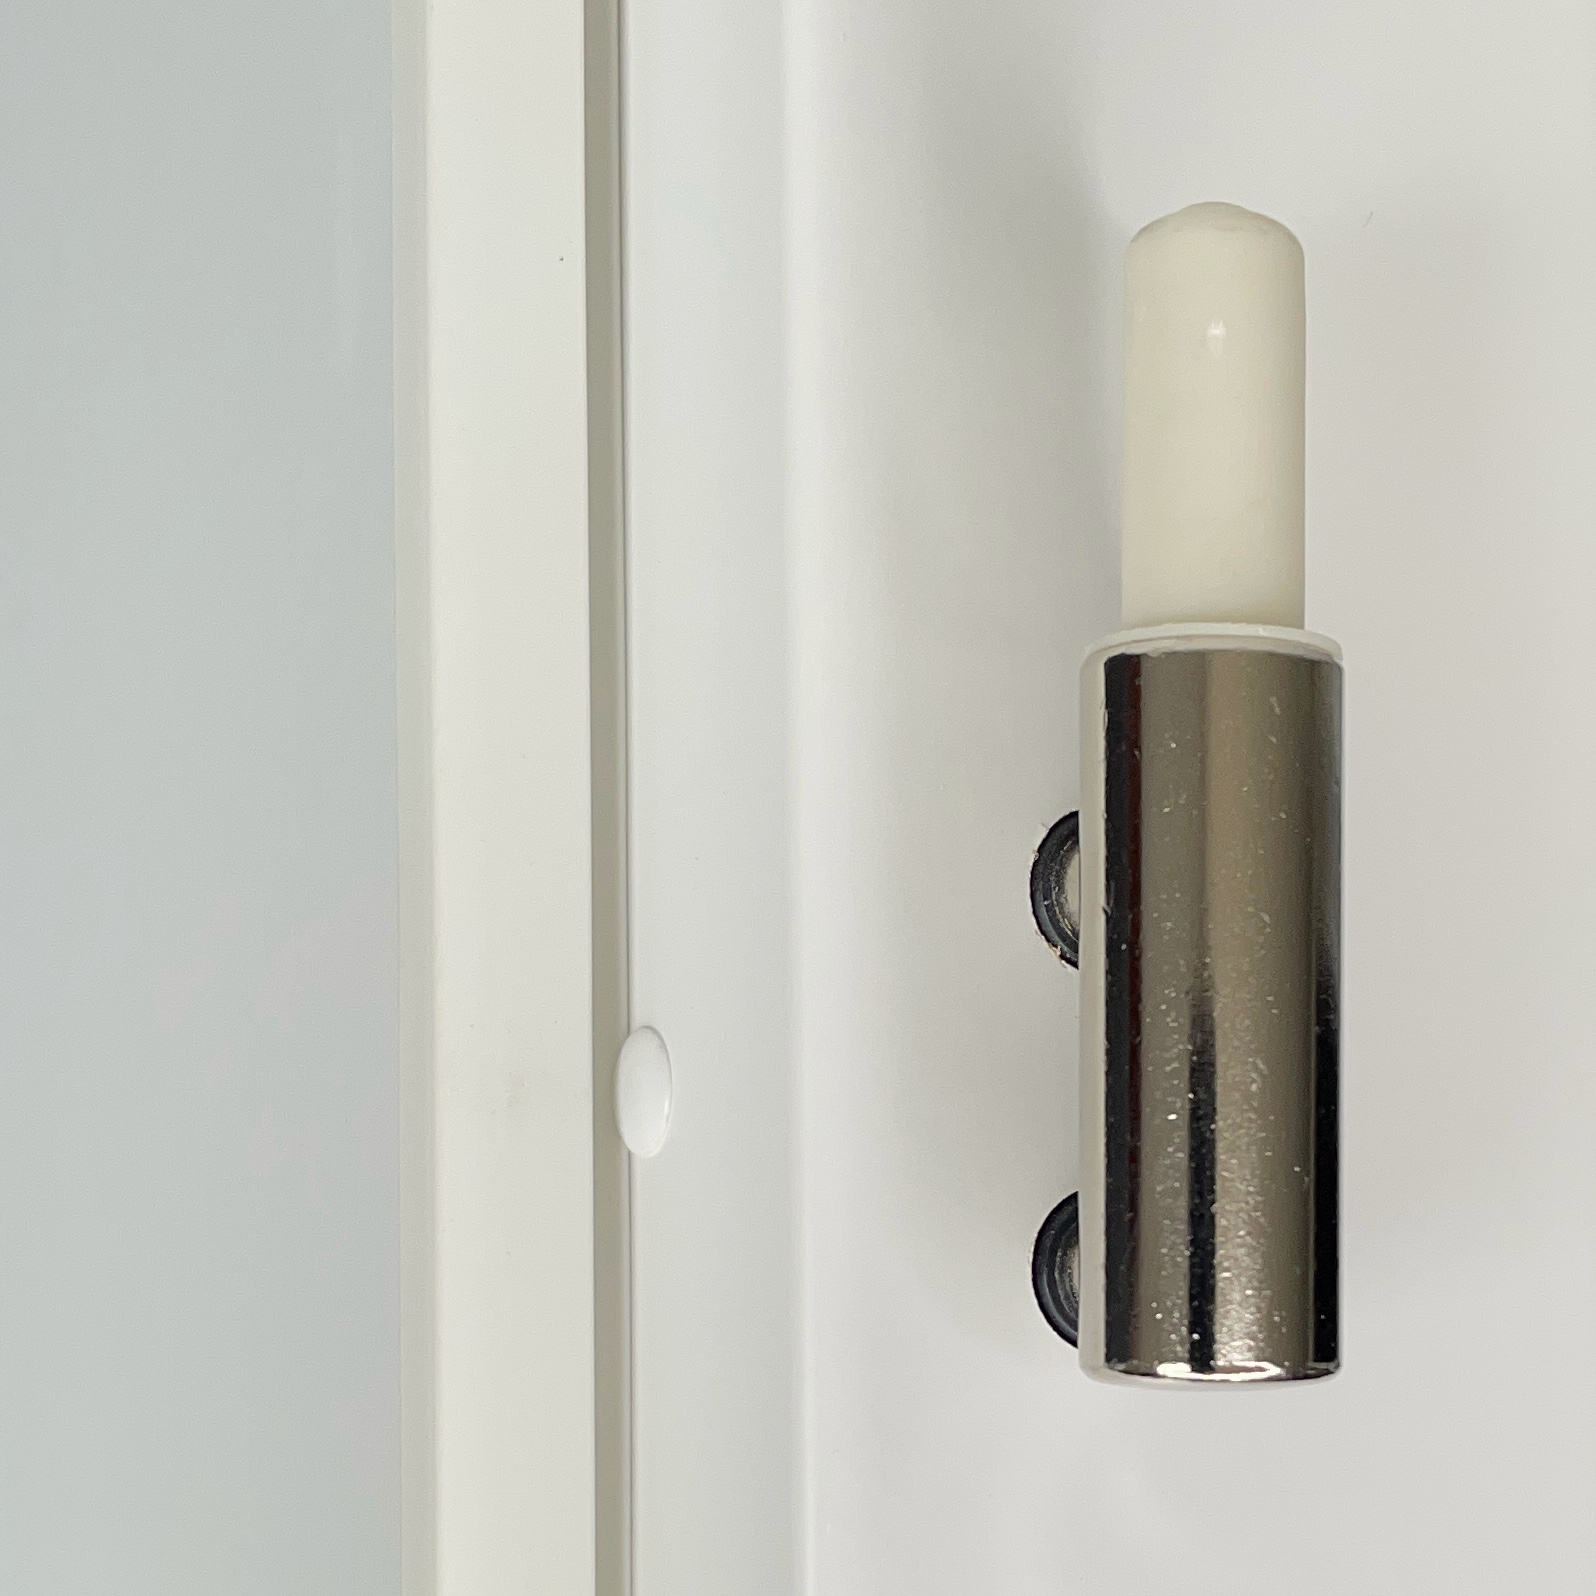 Zimmertür mit Zarge und Lichtausschnittsoft-weiß 4 Rillen Eckkante - Modell Designtür Q41LAS